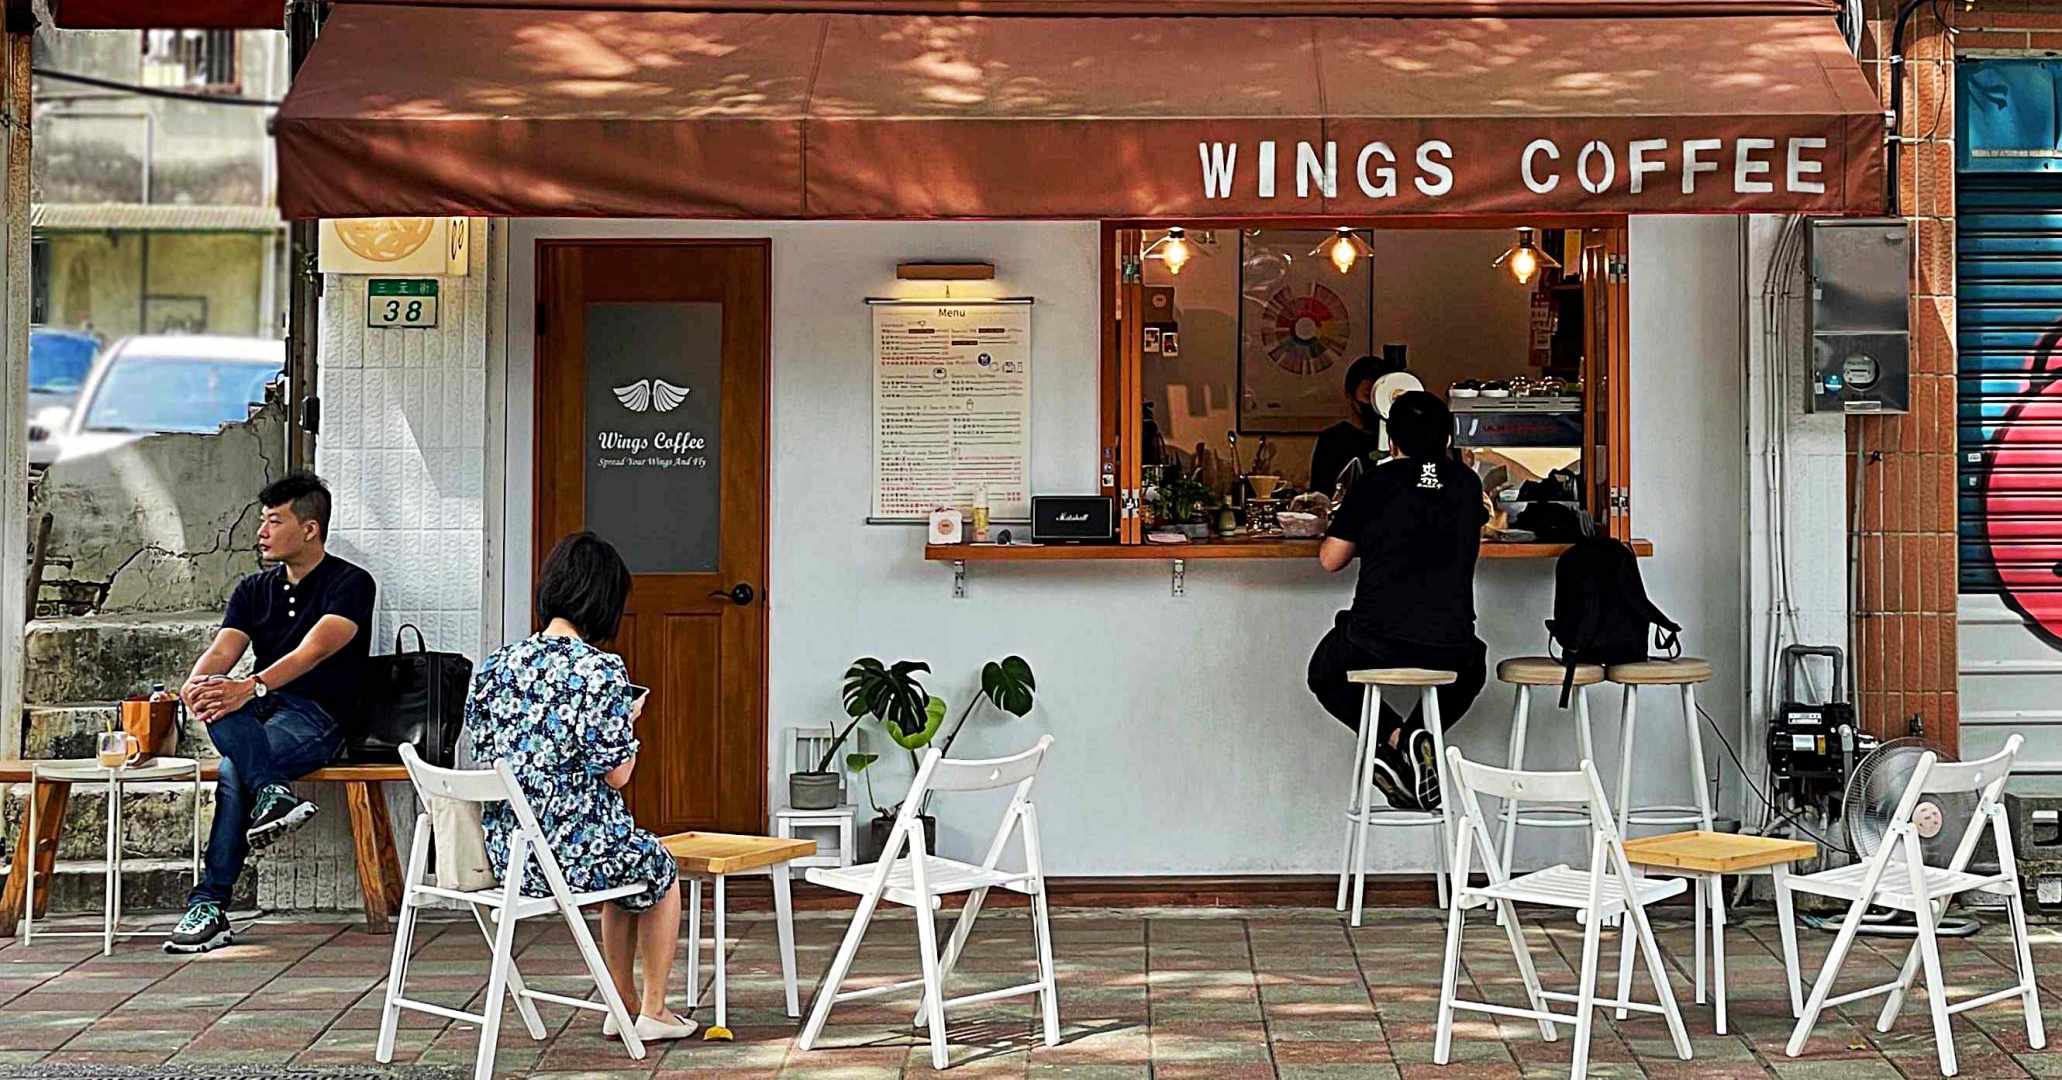 WingsCoffee_Bar,Wings Coffee Bar,WingsCoffee_Bar菜單,WingsCoffee_Bar推薦,中正區美食,三元街美食推薦,植物園美食 @趁早出門吃飽飽